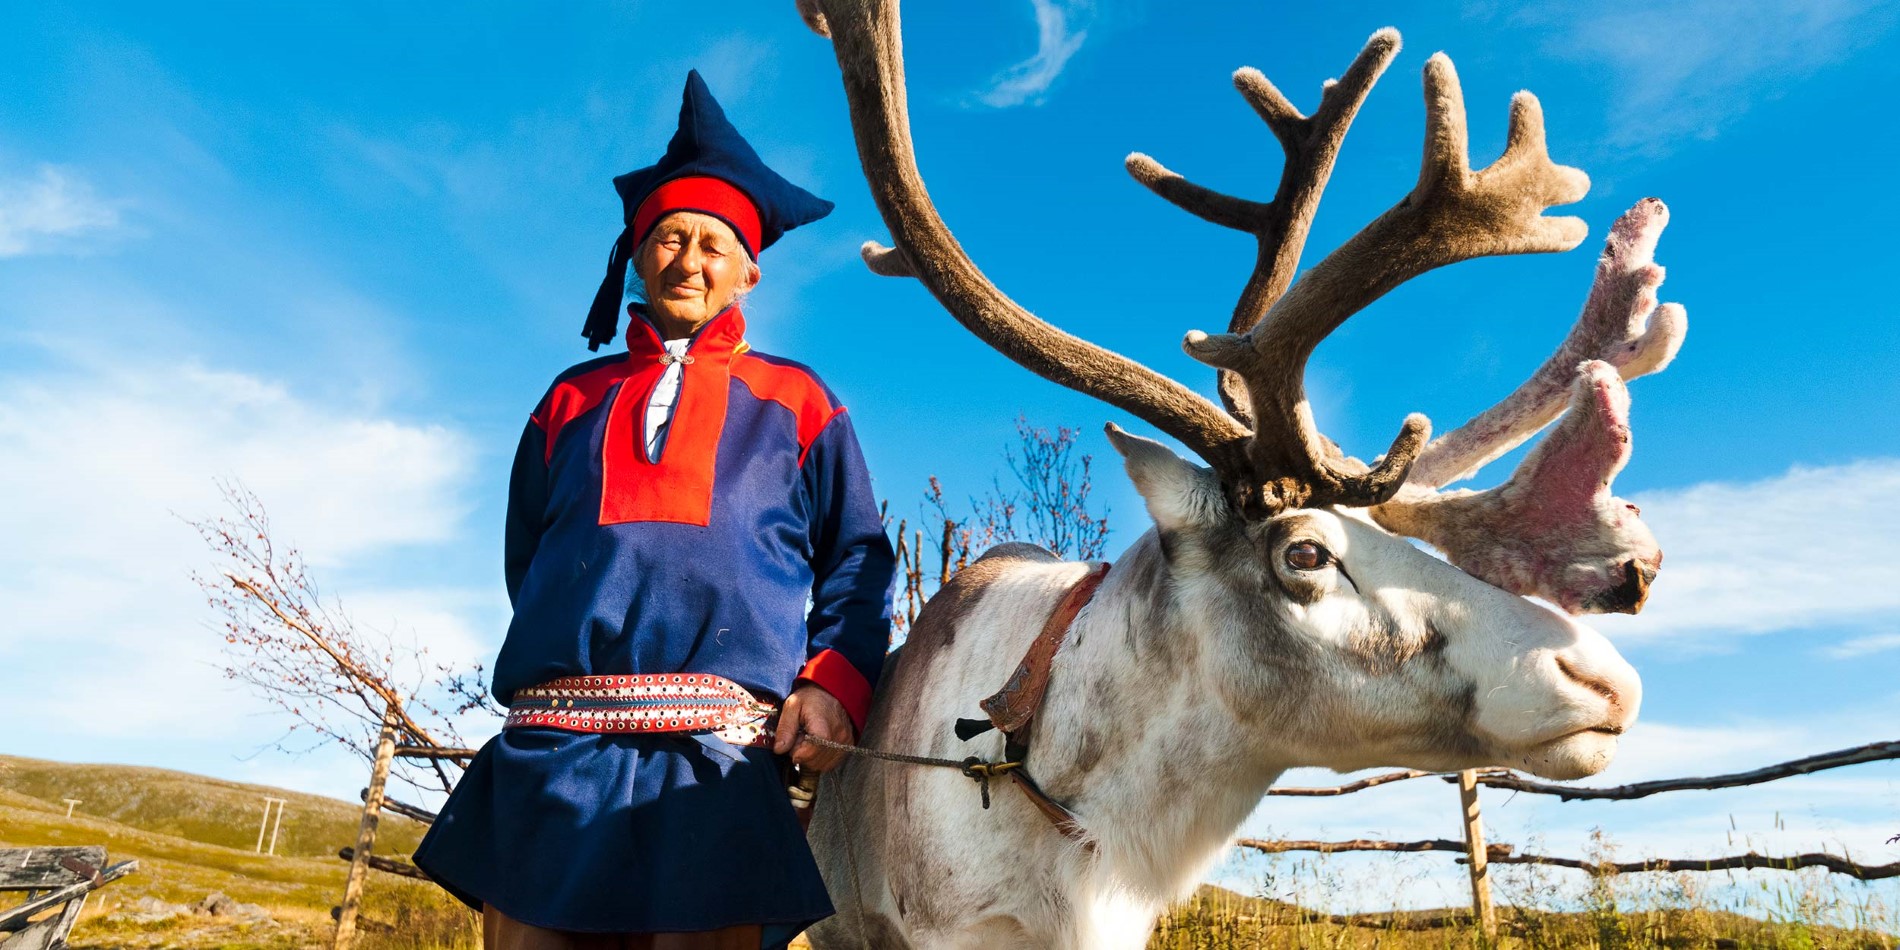 Renar är viktiga för samisk kultur och liv